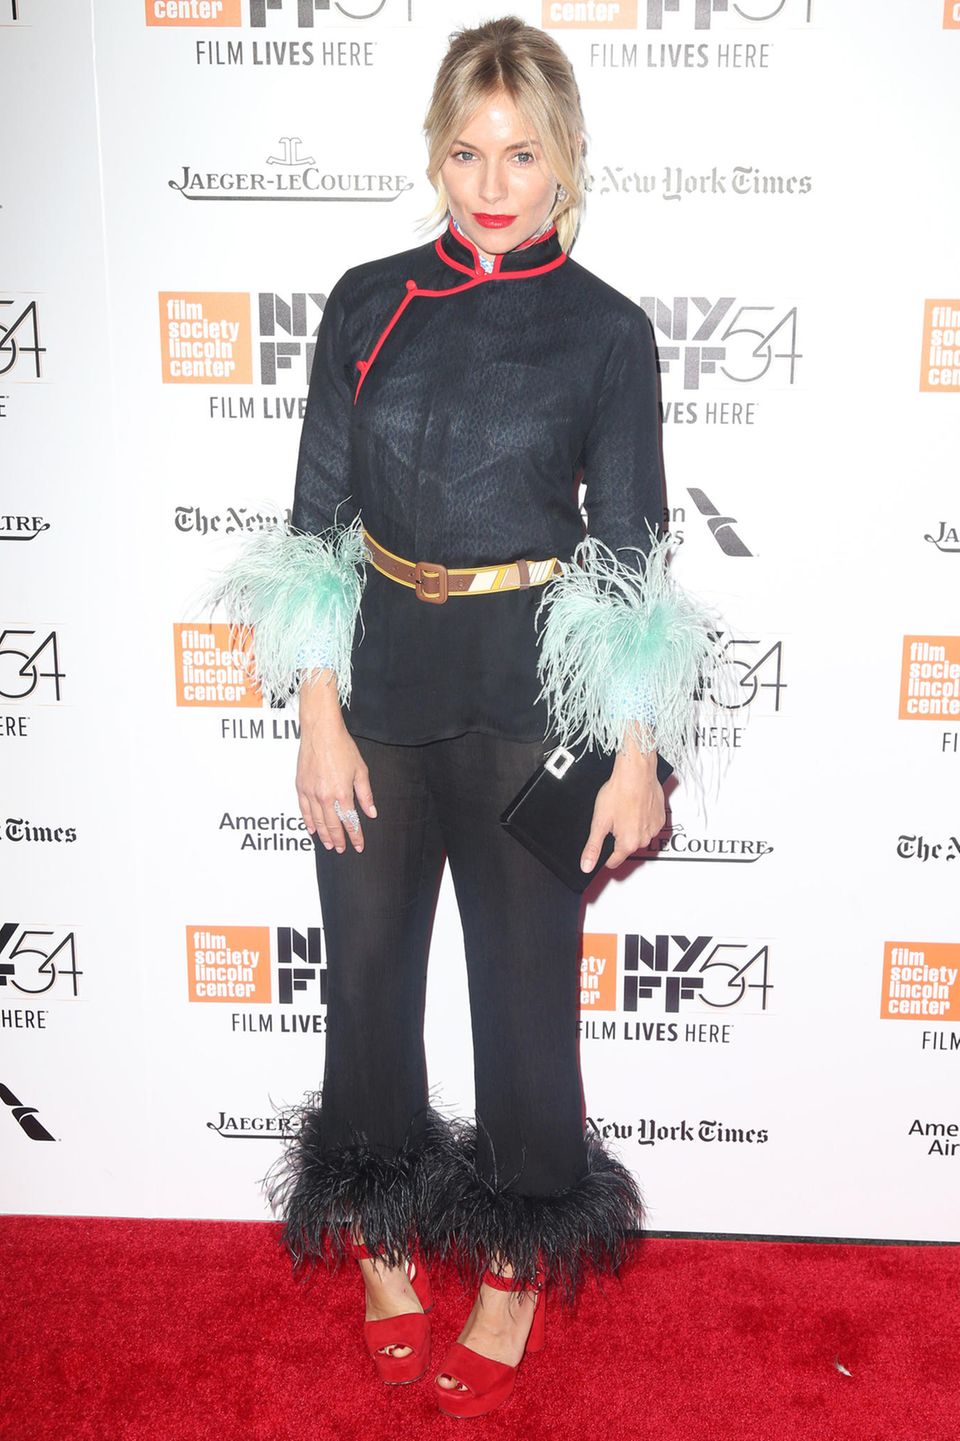 Bei Sienna Millers Red-Carpet-Auftritt in New York treffen Asia-Look und fedrige Details aufeinander.